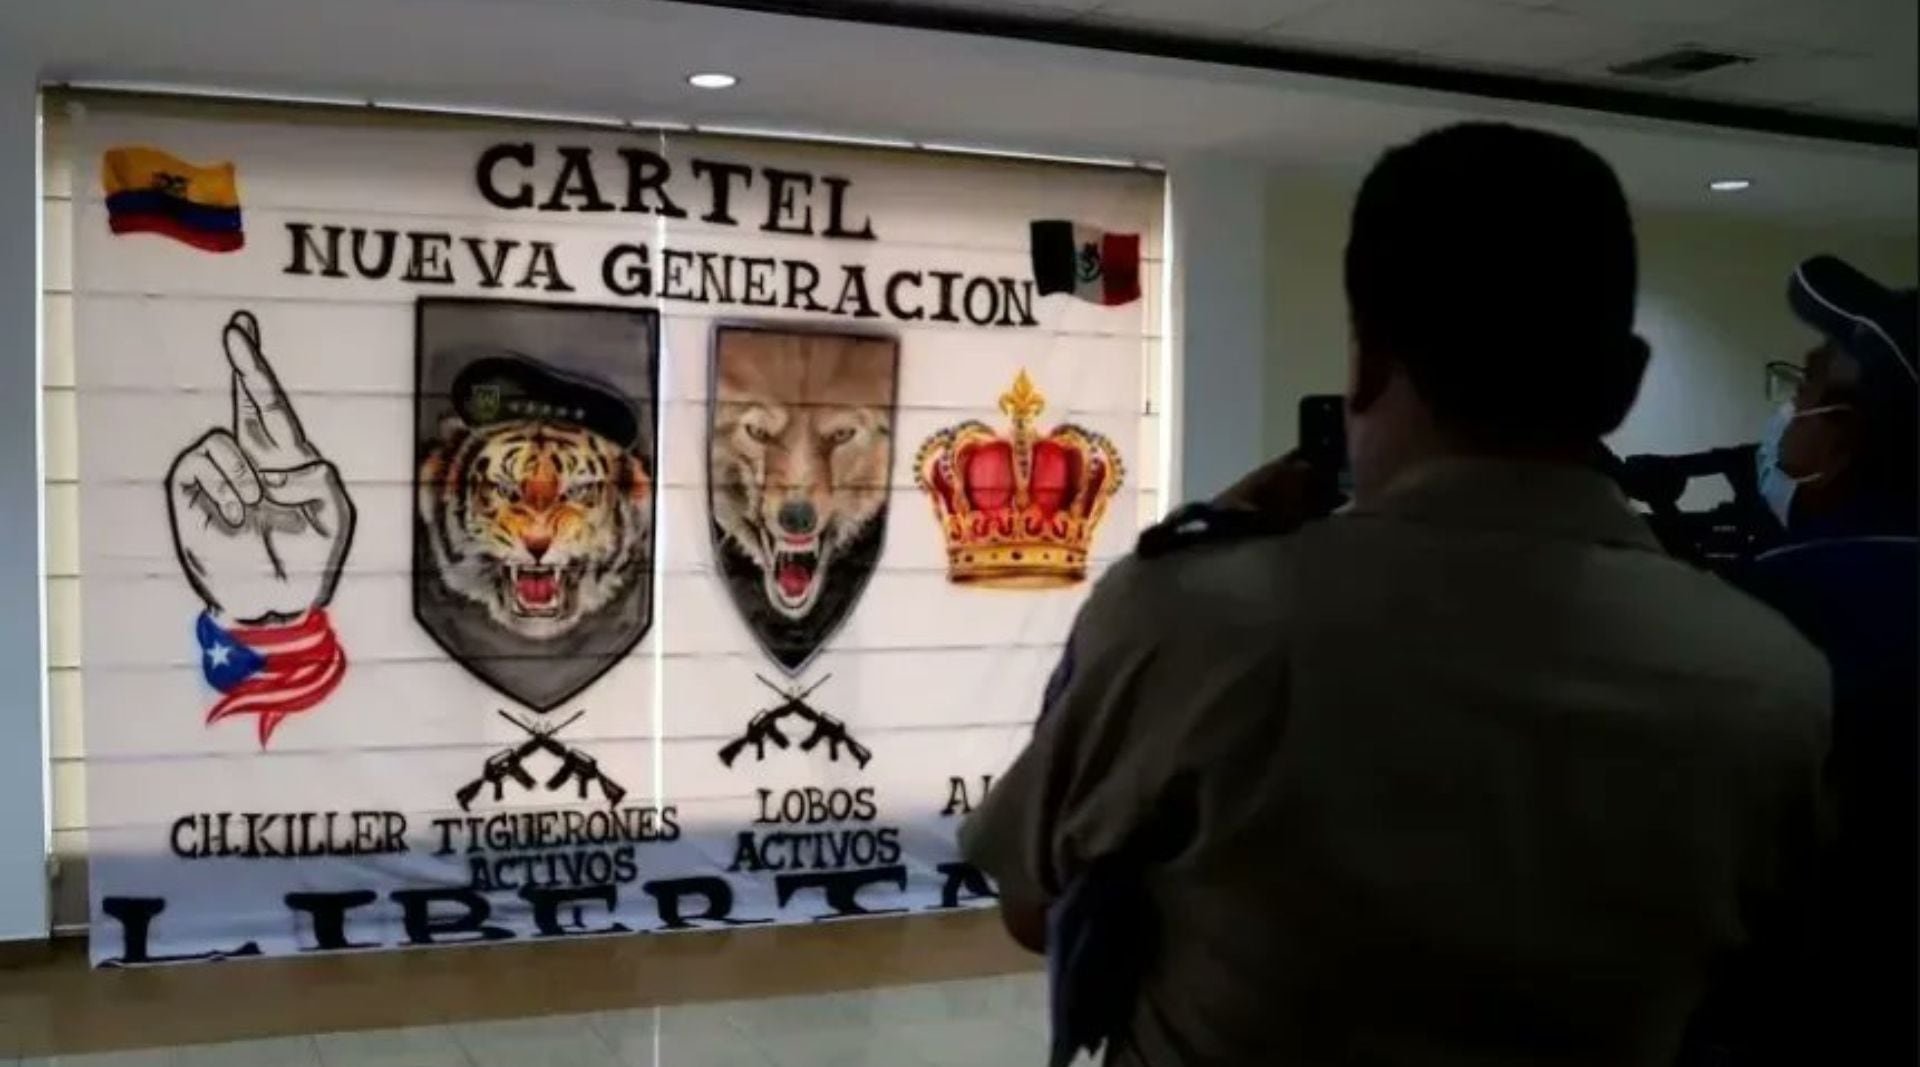 Los Lobos y Los Tiguerones son células aparentemente apadrinadas por el CJNG en Ecuador. (Foto: Twitter/@aisdmx)